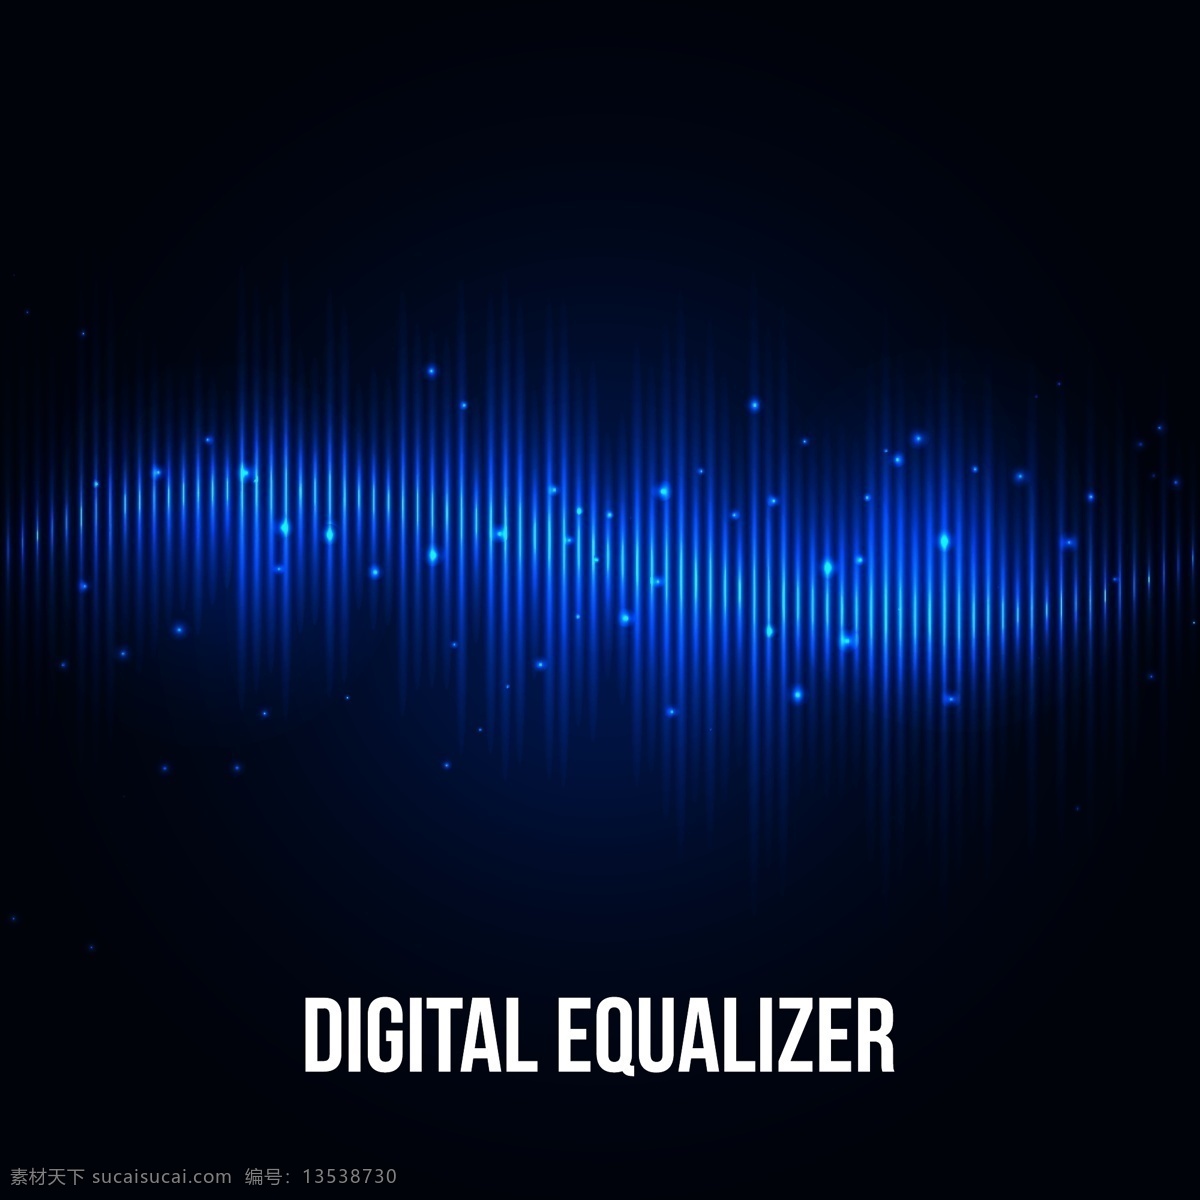 音乐 均衡器 动感 蓝色 跳动 线条 音乐背景 音乐素材 音频 音乐均衡器 数字均衡器 海报 海报背景图